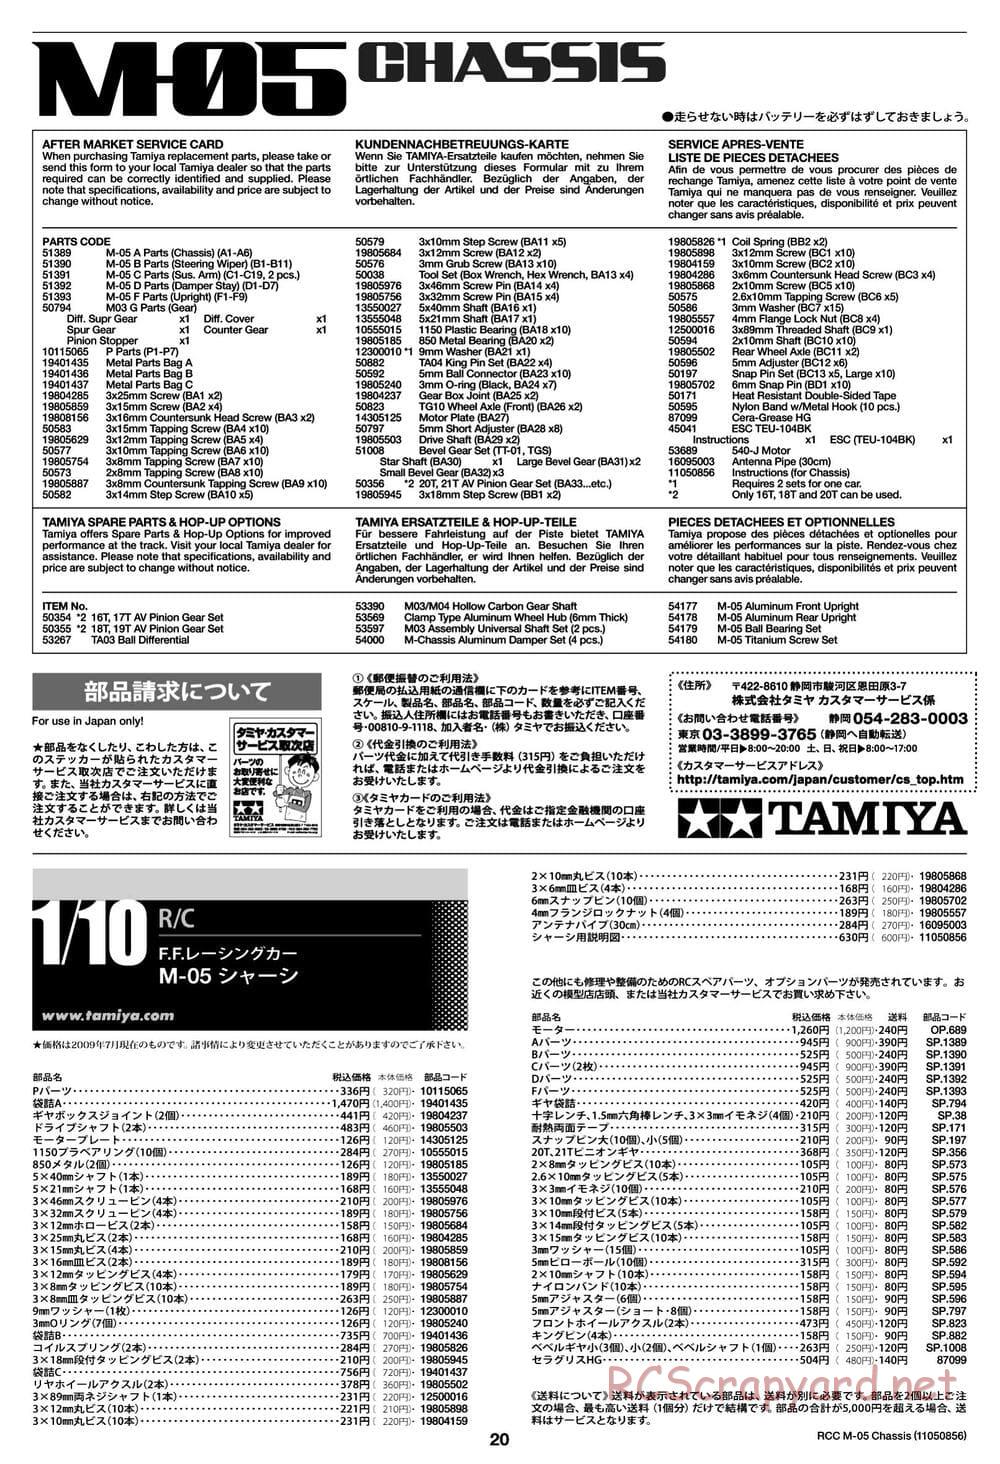 Tamiya - M-05 Chassis - Manual - Page 20